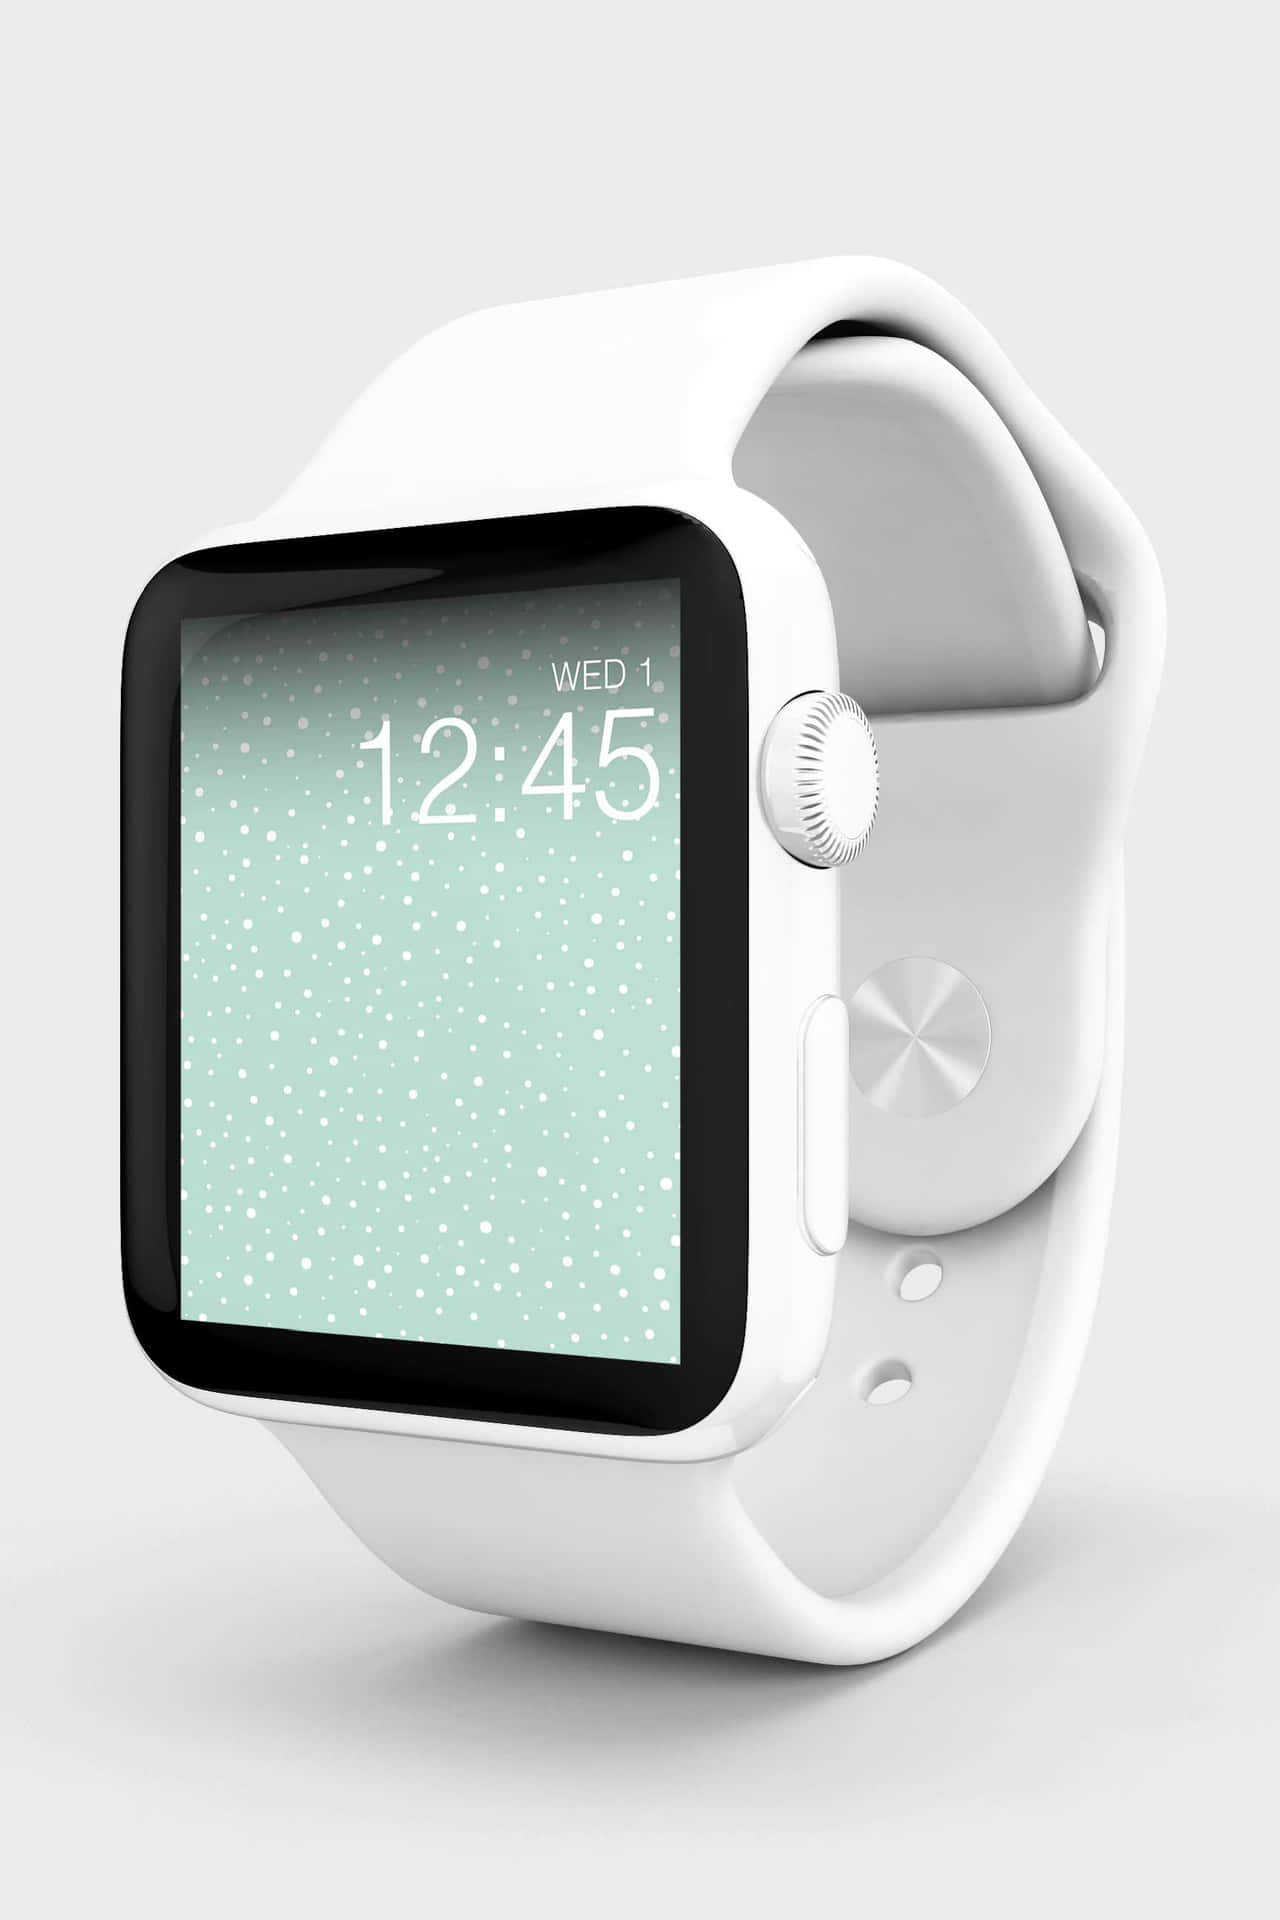 Machensie Sich Bereit, Ihren Lebensstil Mit Der Apple Watch Zu Verändern.